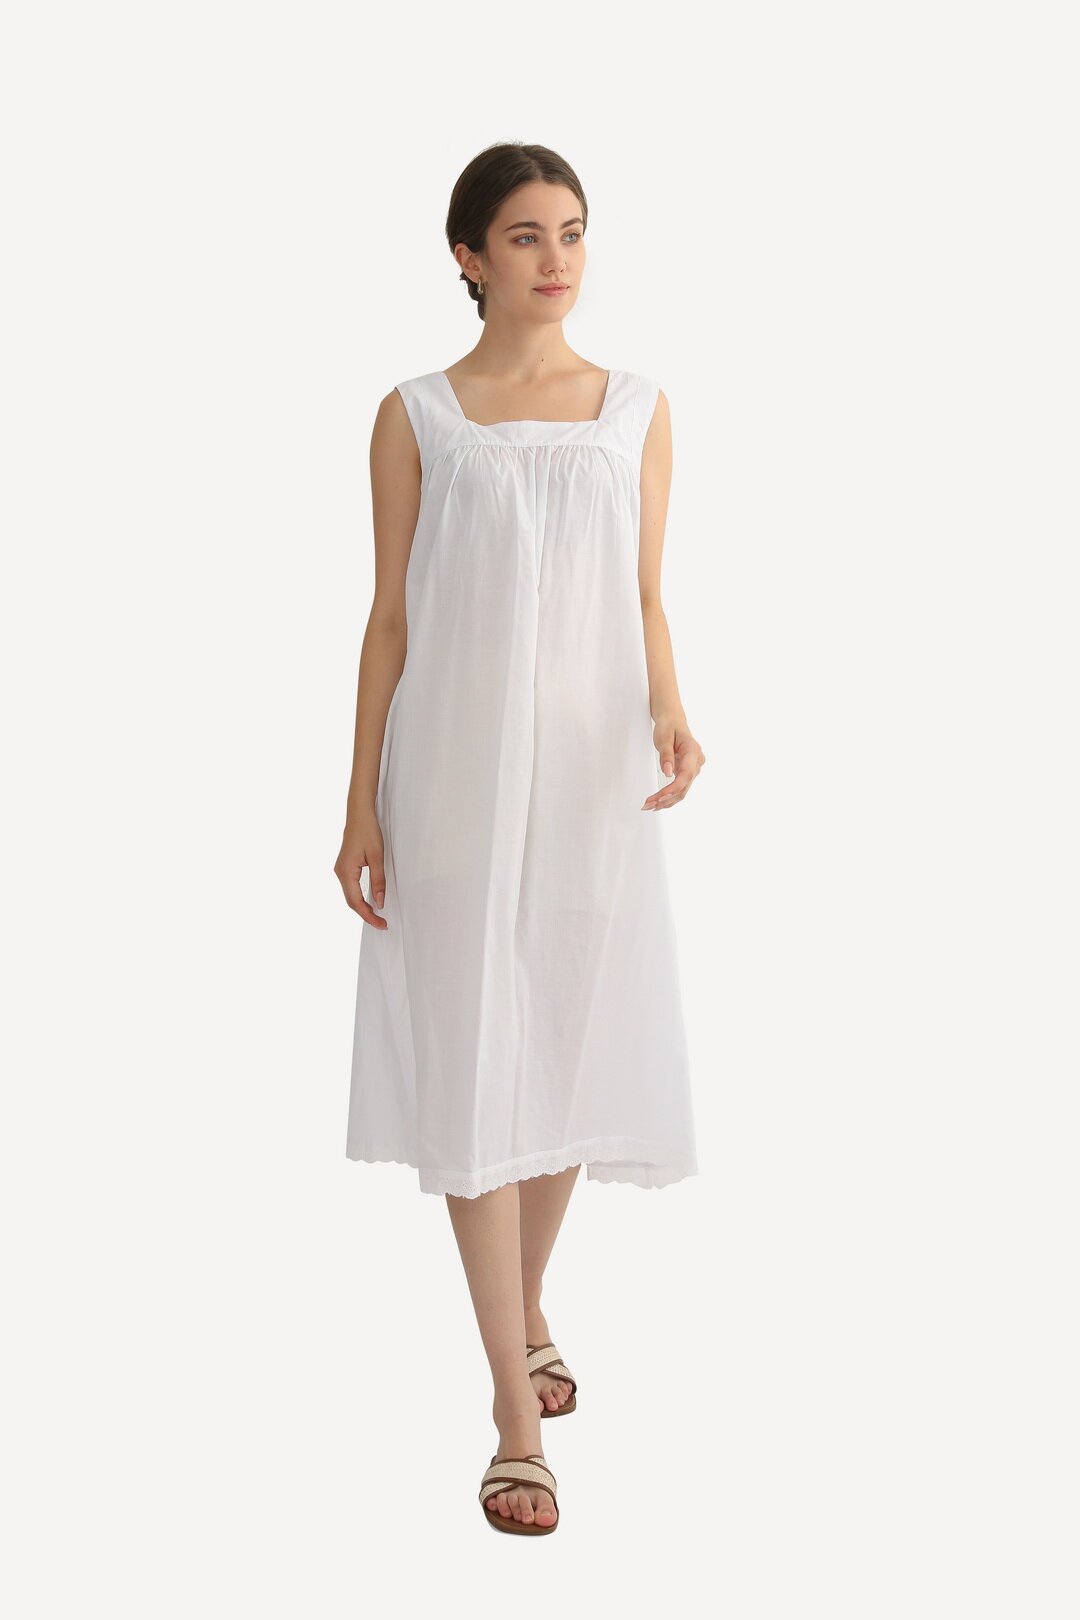 Ночная сорочка женская Mingul & Meiyeon 220792 белая 46 RU